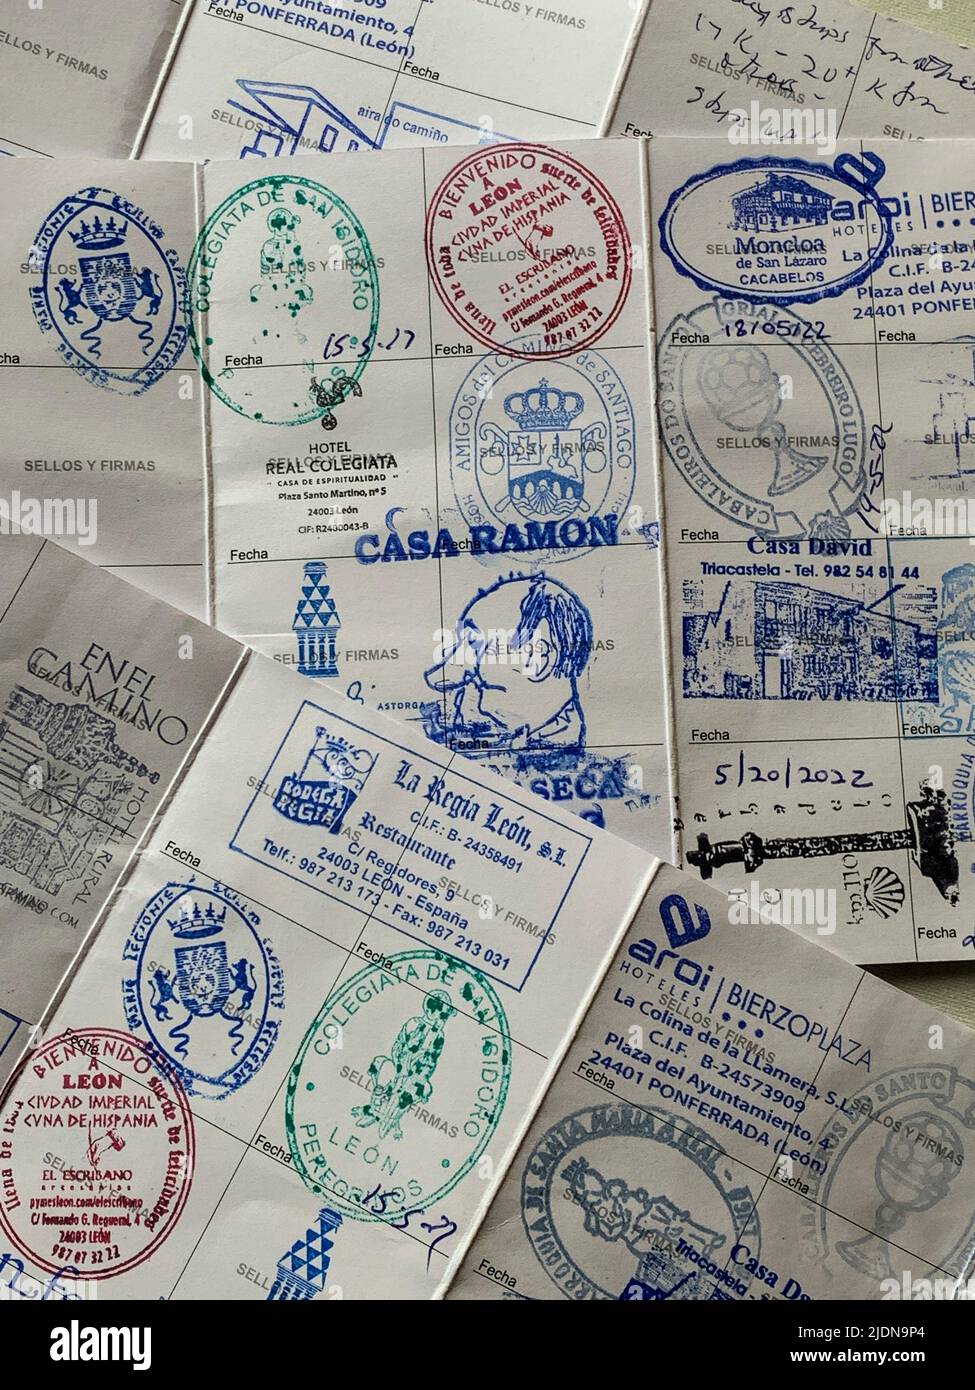 Spagna. Camino de Santiago francobolla nei 'passaporti' dei pellegrini per verificare che abbiano camminato una distanza sufficiente per ottenere una Compostela (certificato). Foto Stock